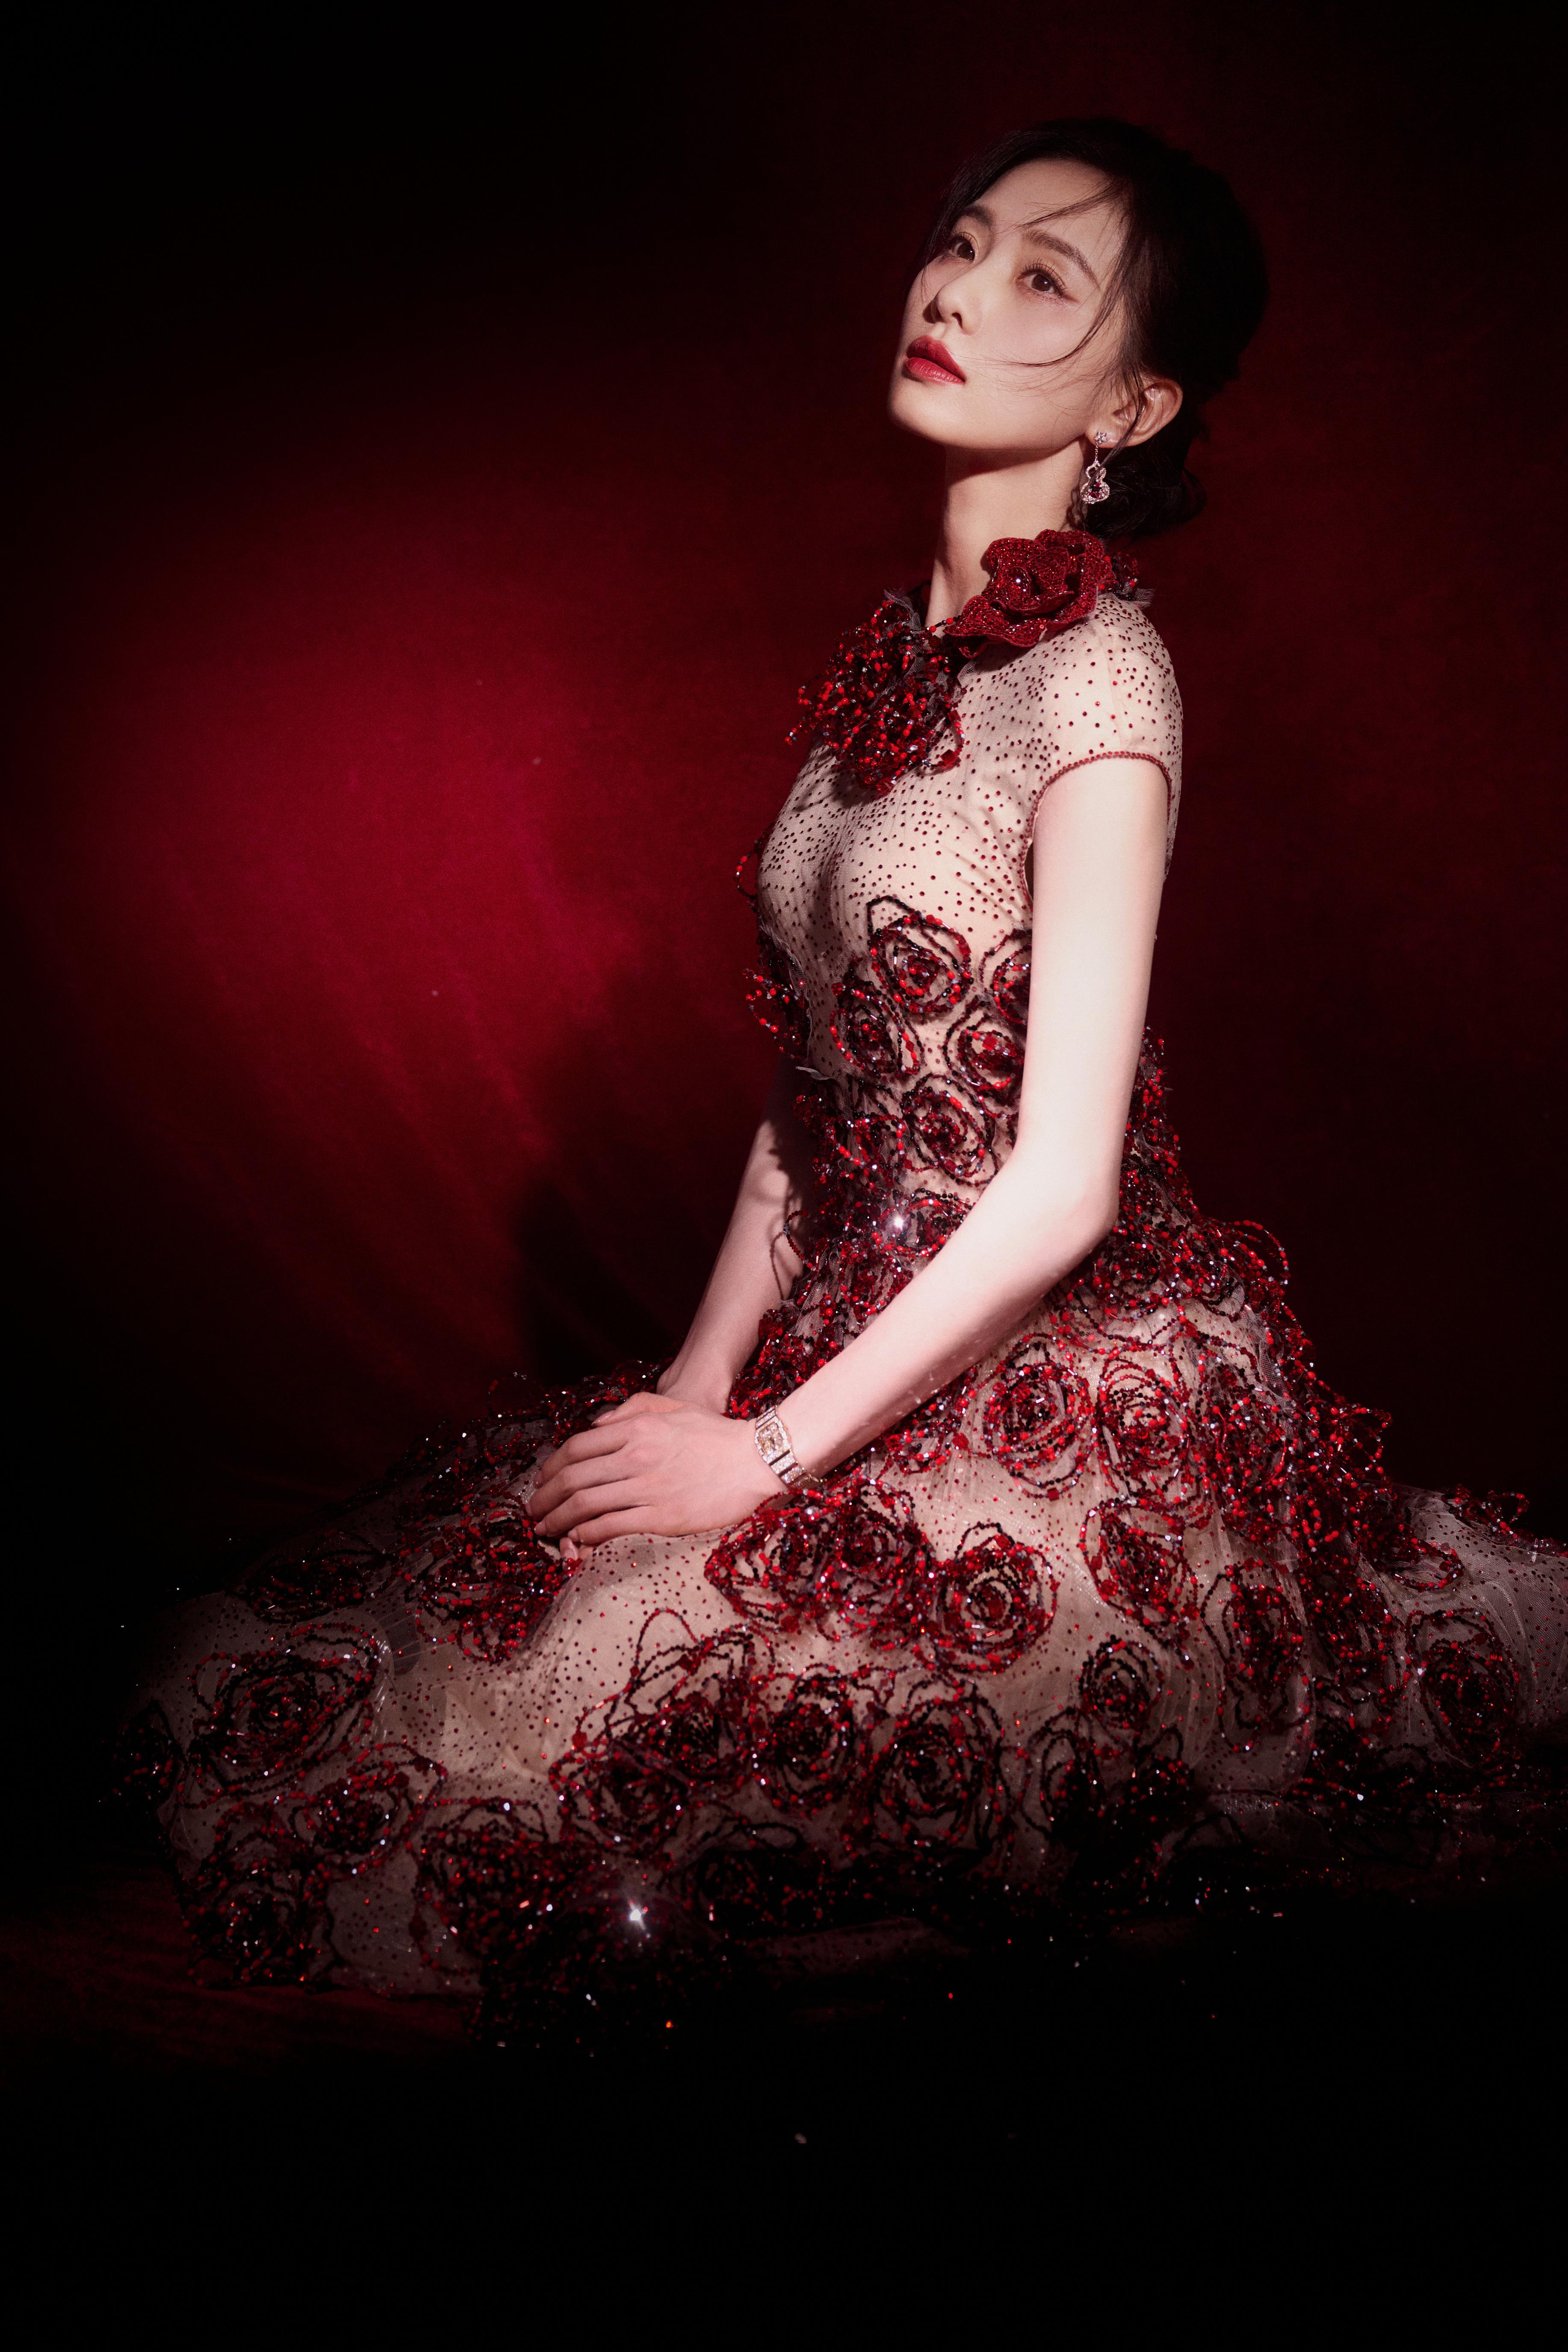 刘诗诗身穿长裙红玫瑰点缀 举止温柔优雅热烈惊艳,1 (9)